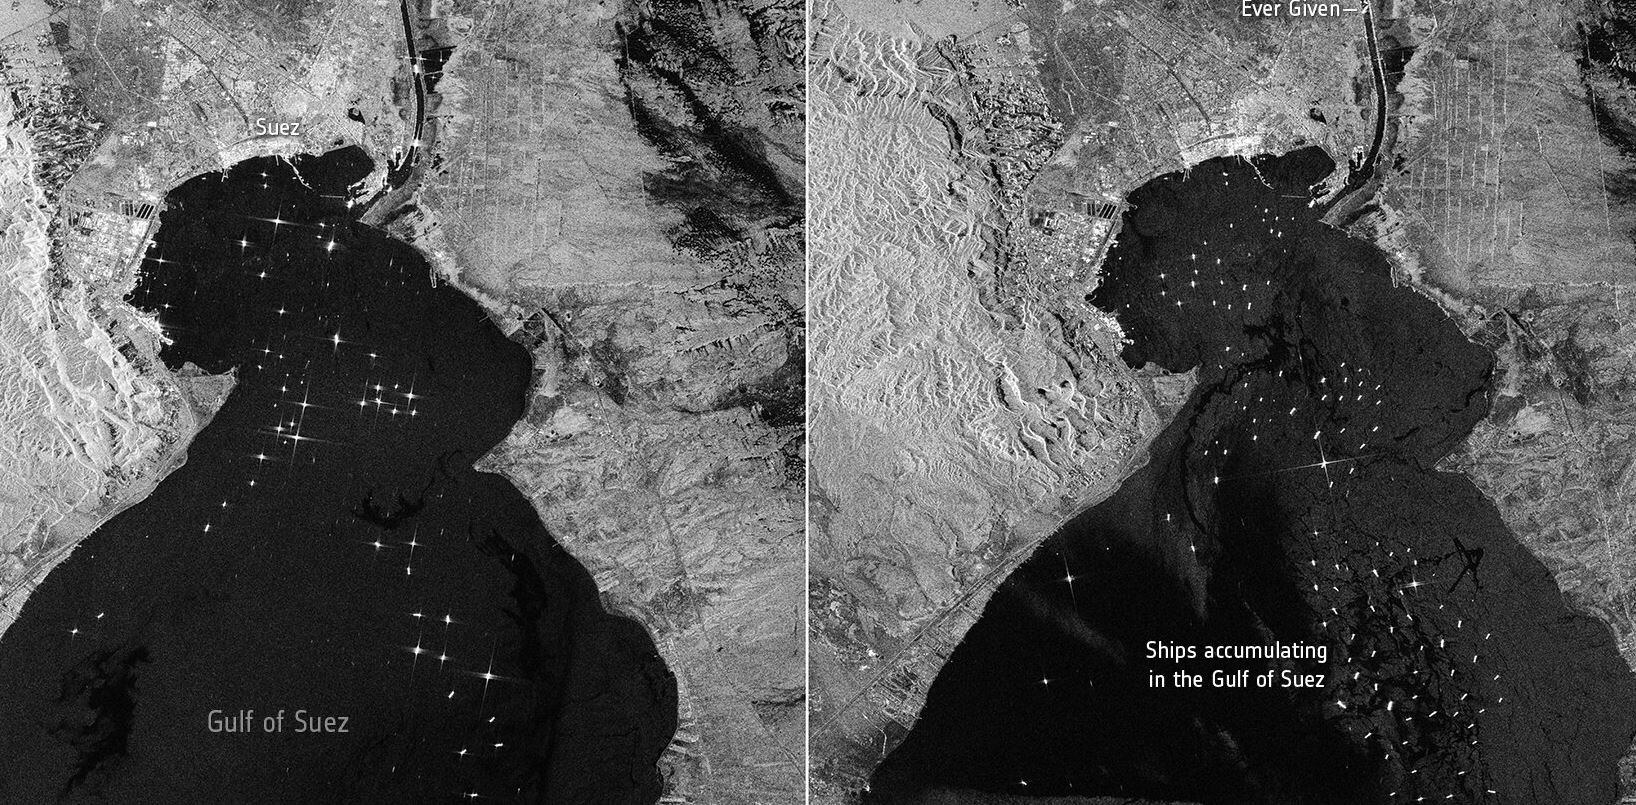 El enorme buque portacontenedores Ever Given, encajado en el Canal de Suez de Egipto, y el resto de los buques esperando su liberación pueden verse en unas imágenes capturadas por la misión Copernicus Sentinel-1 de la ESA